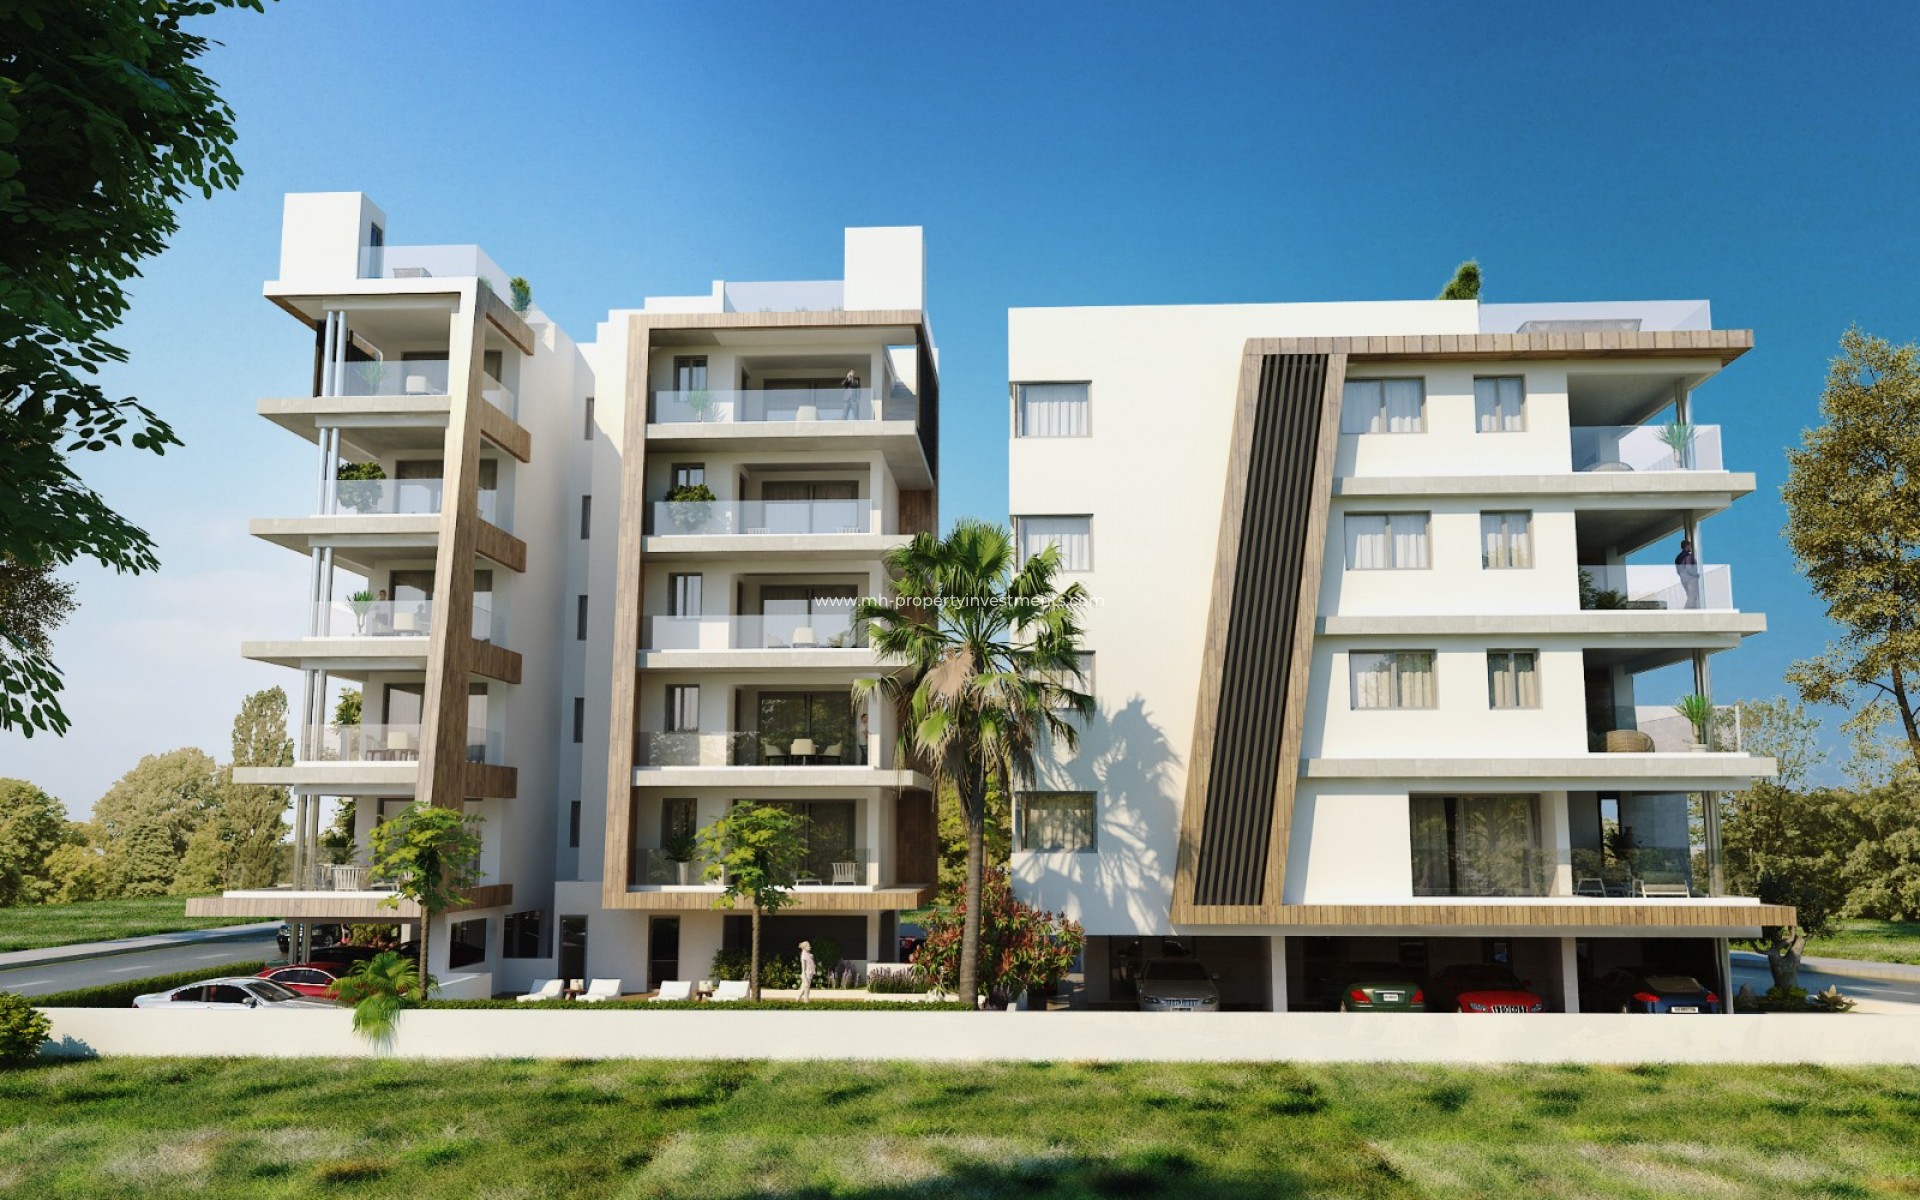 en cours de construction - Apartment - Larnaca - Harbor